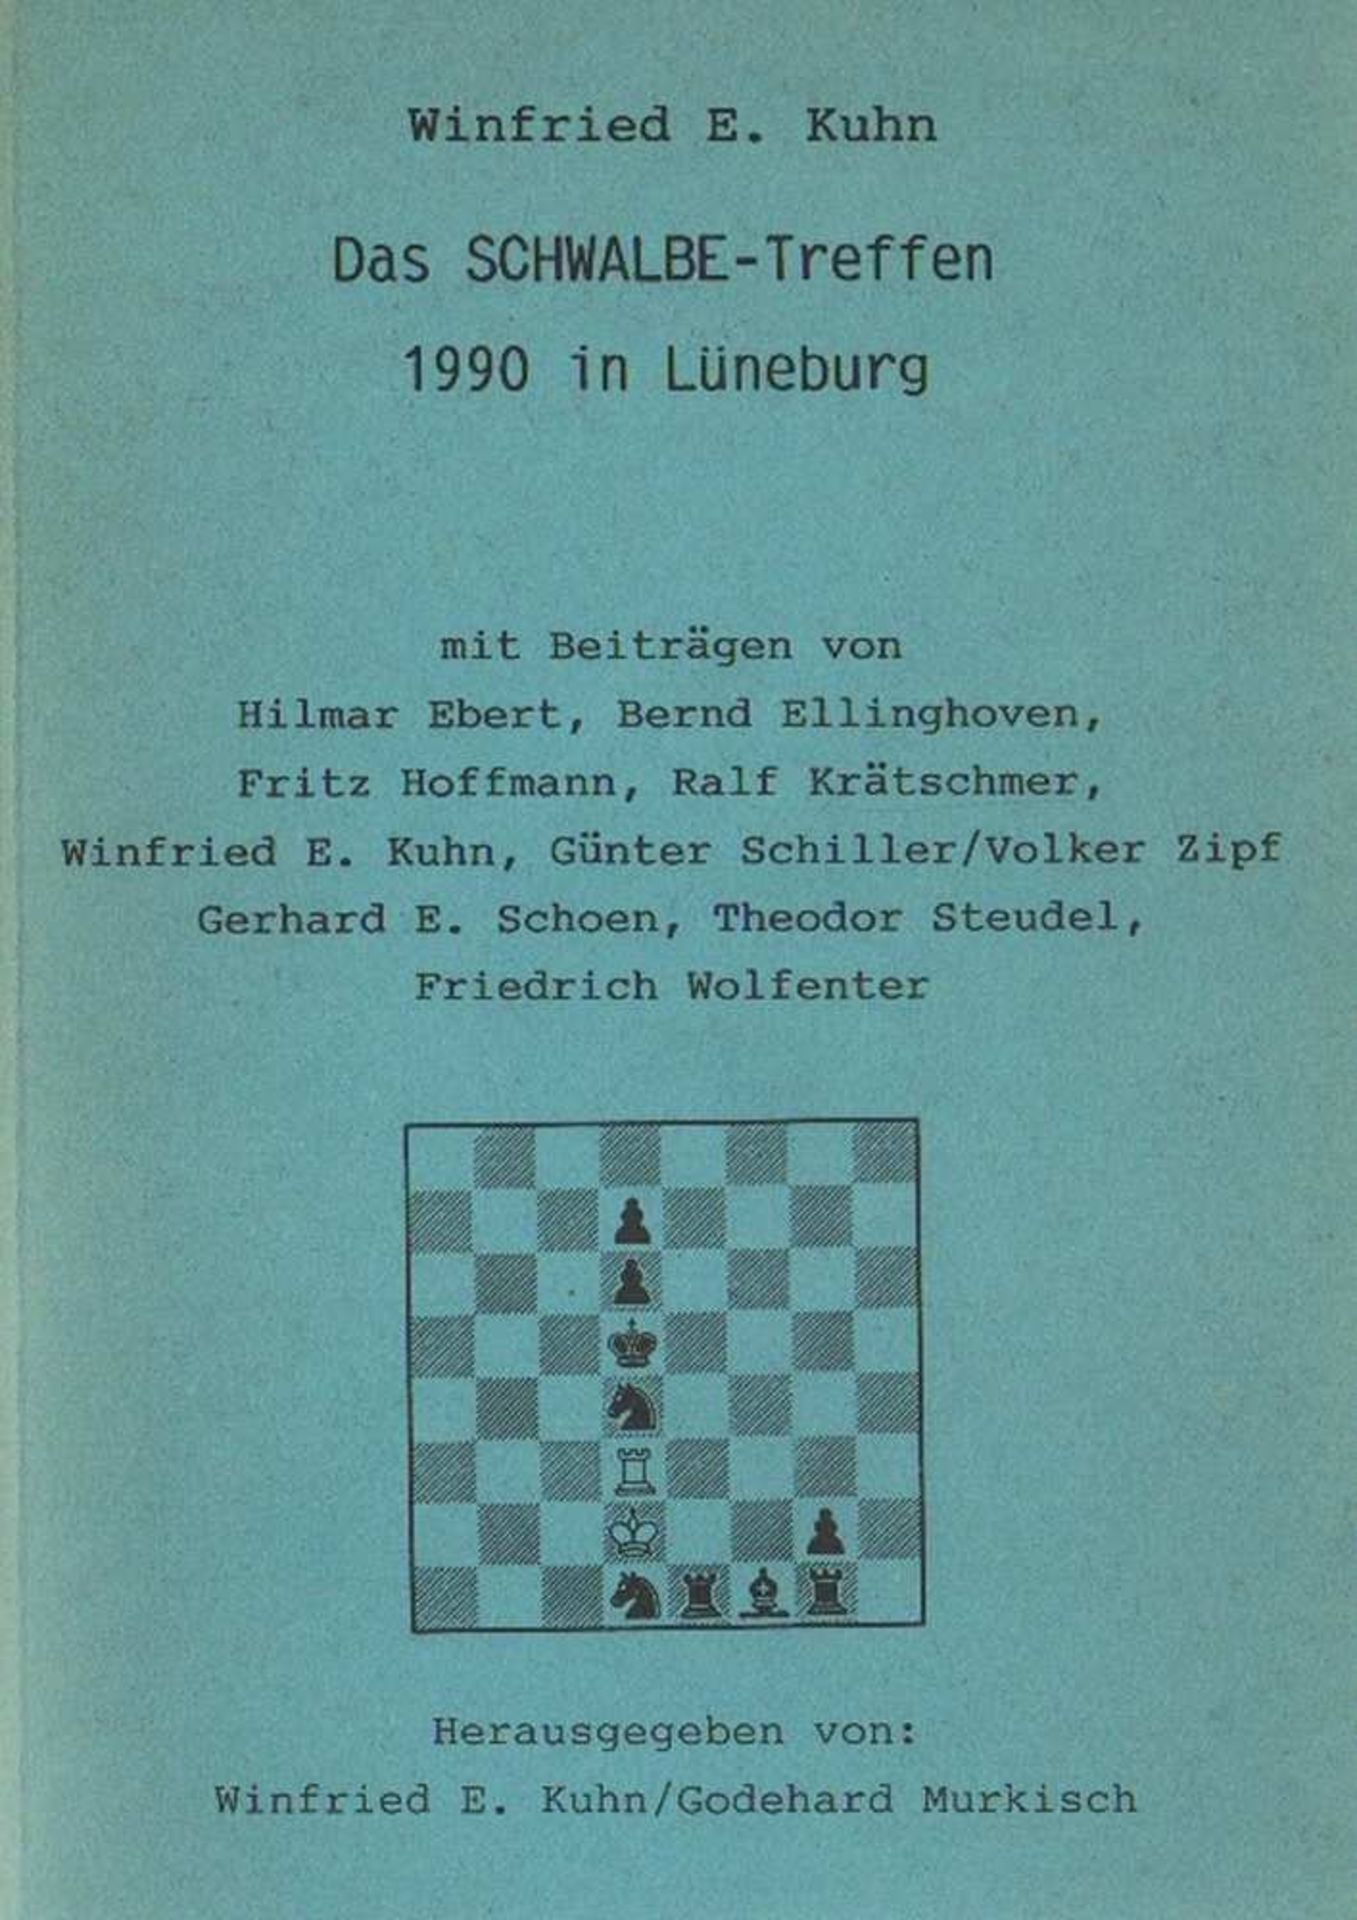 Kuhn, Winfried E. Das Schwalbe - Treffen 1990 in Lüneburg mit Beiträgen von H. Ebert, B. Ellinghoven